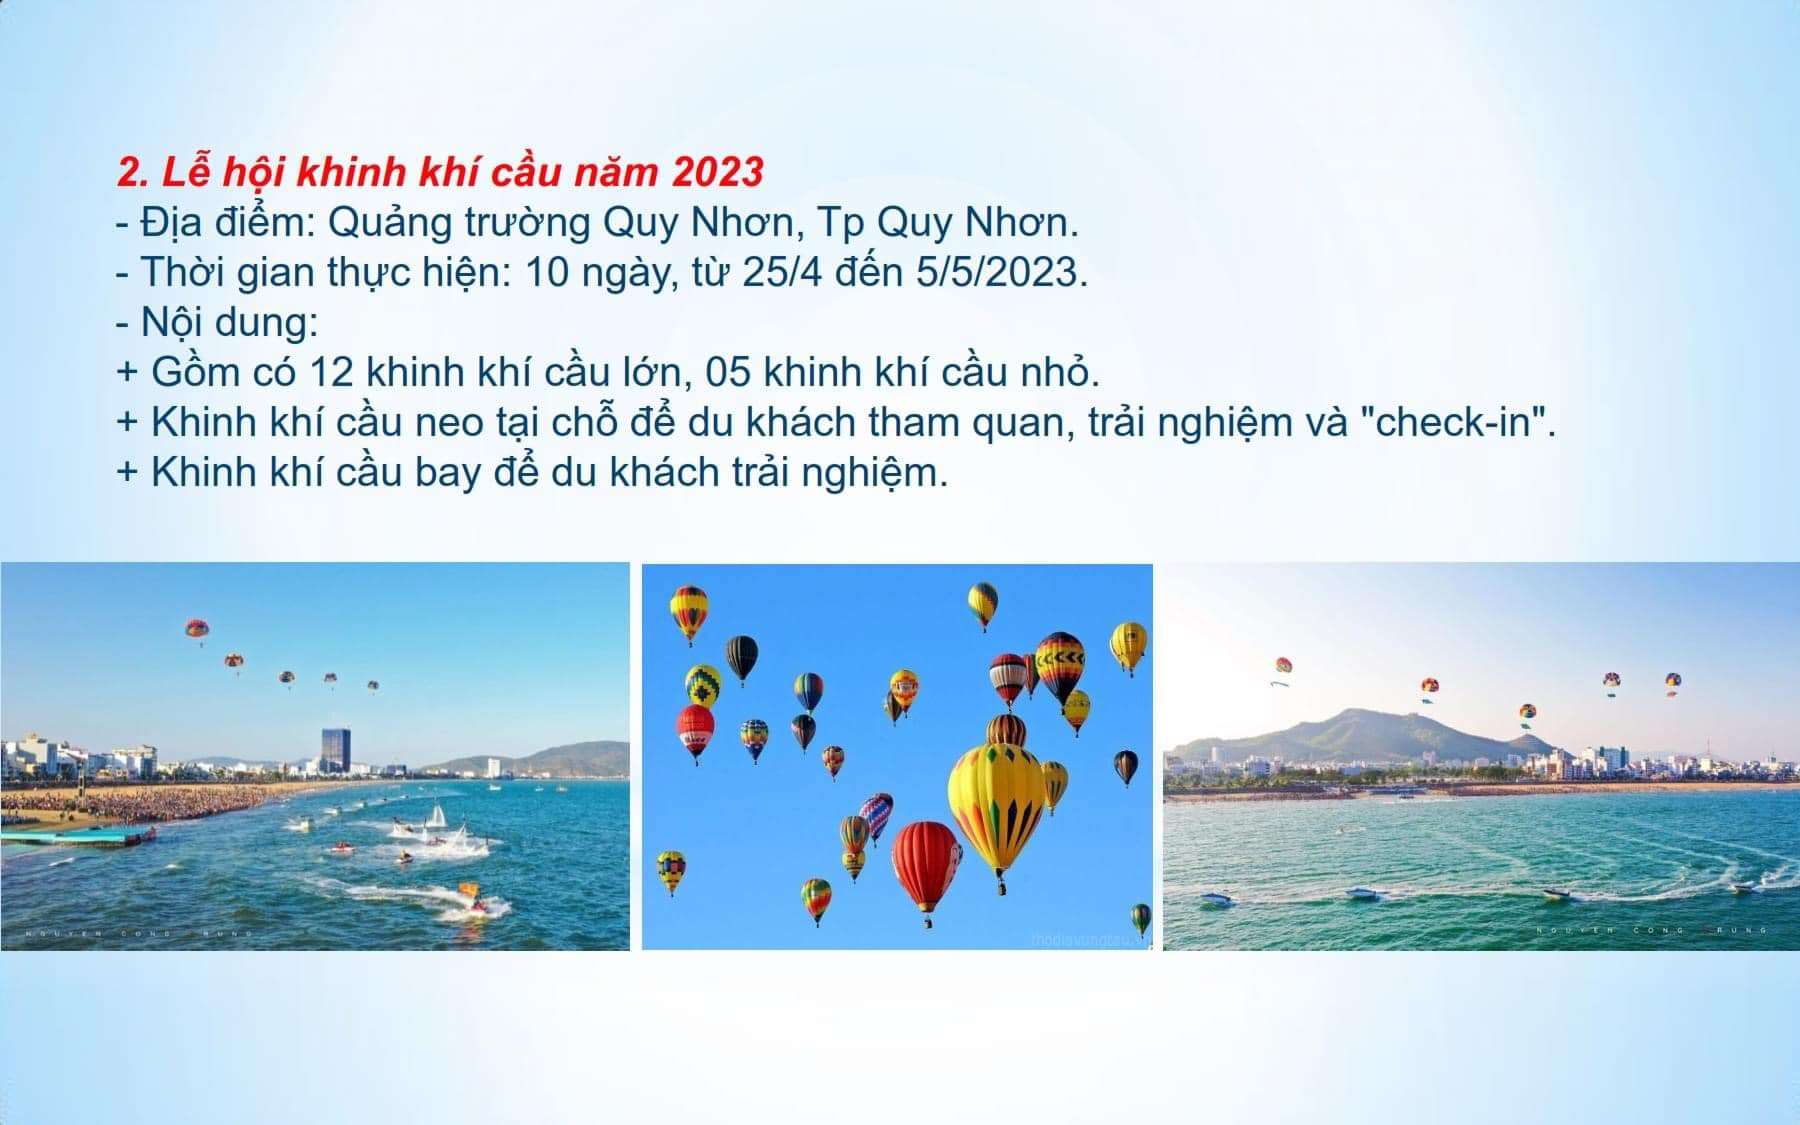 Các sự kiện lễ hội du lịch tại Quy Nhơn Bình Định 2023